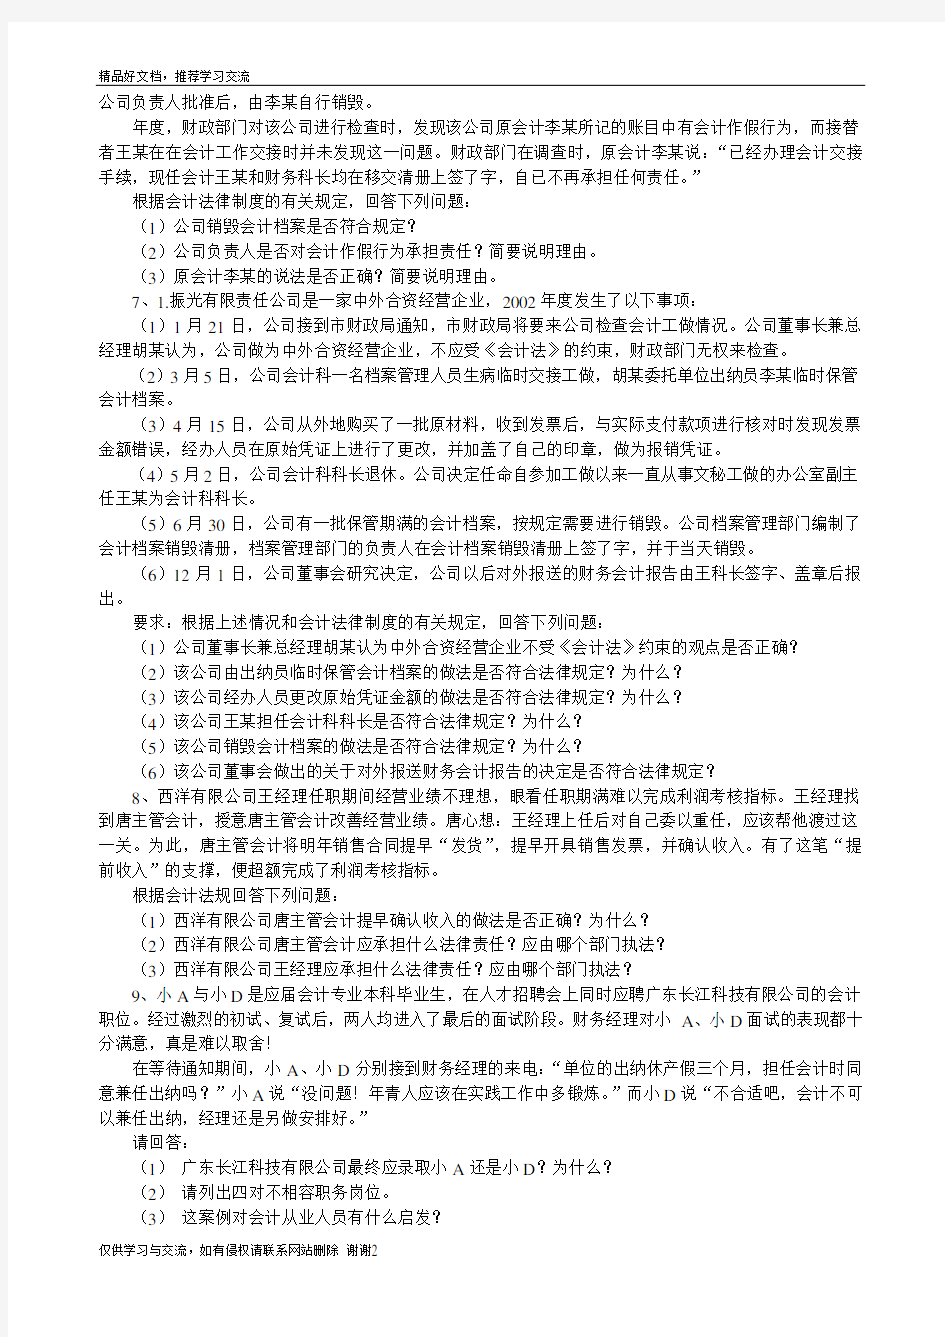 最新会计法律制度案例分析中国法律案例大全